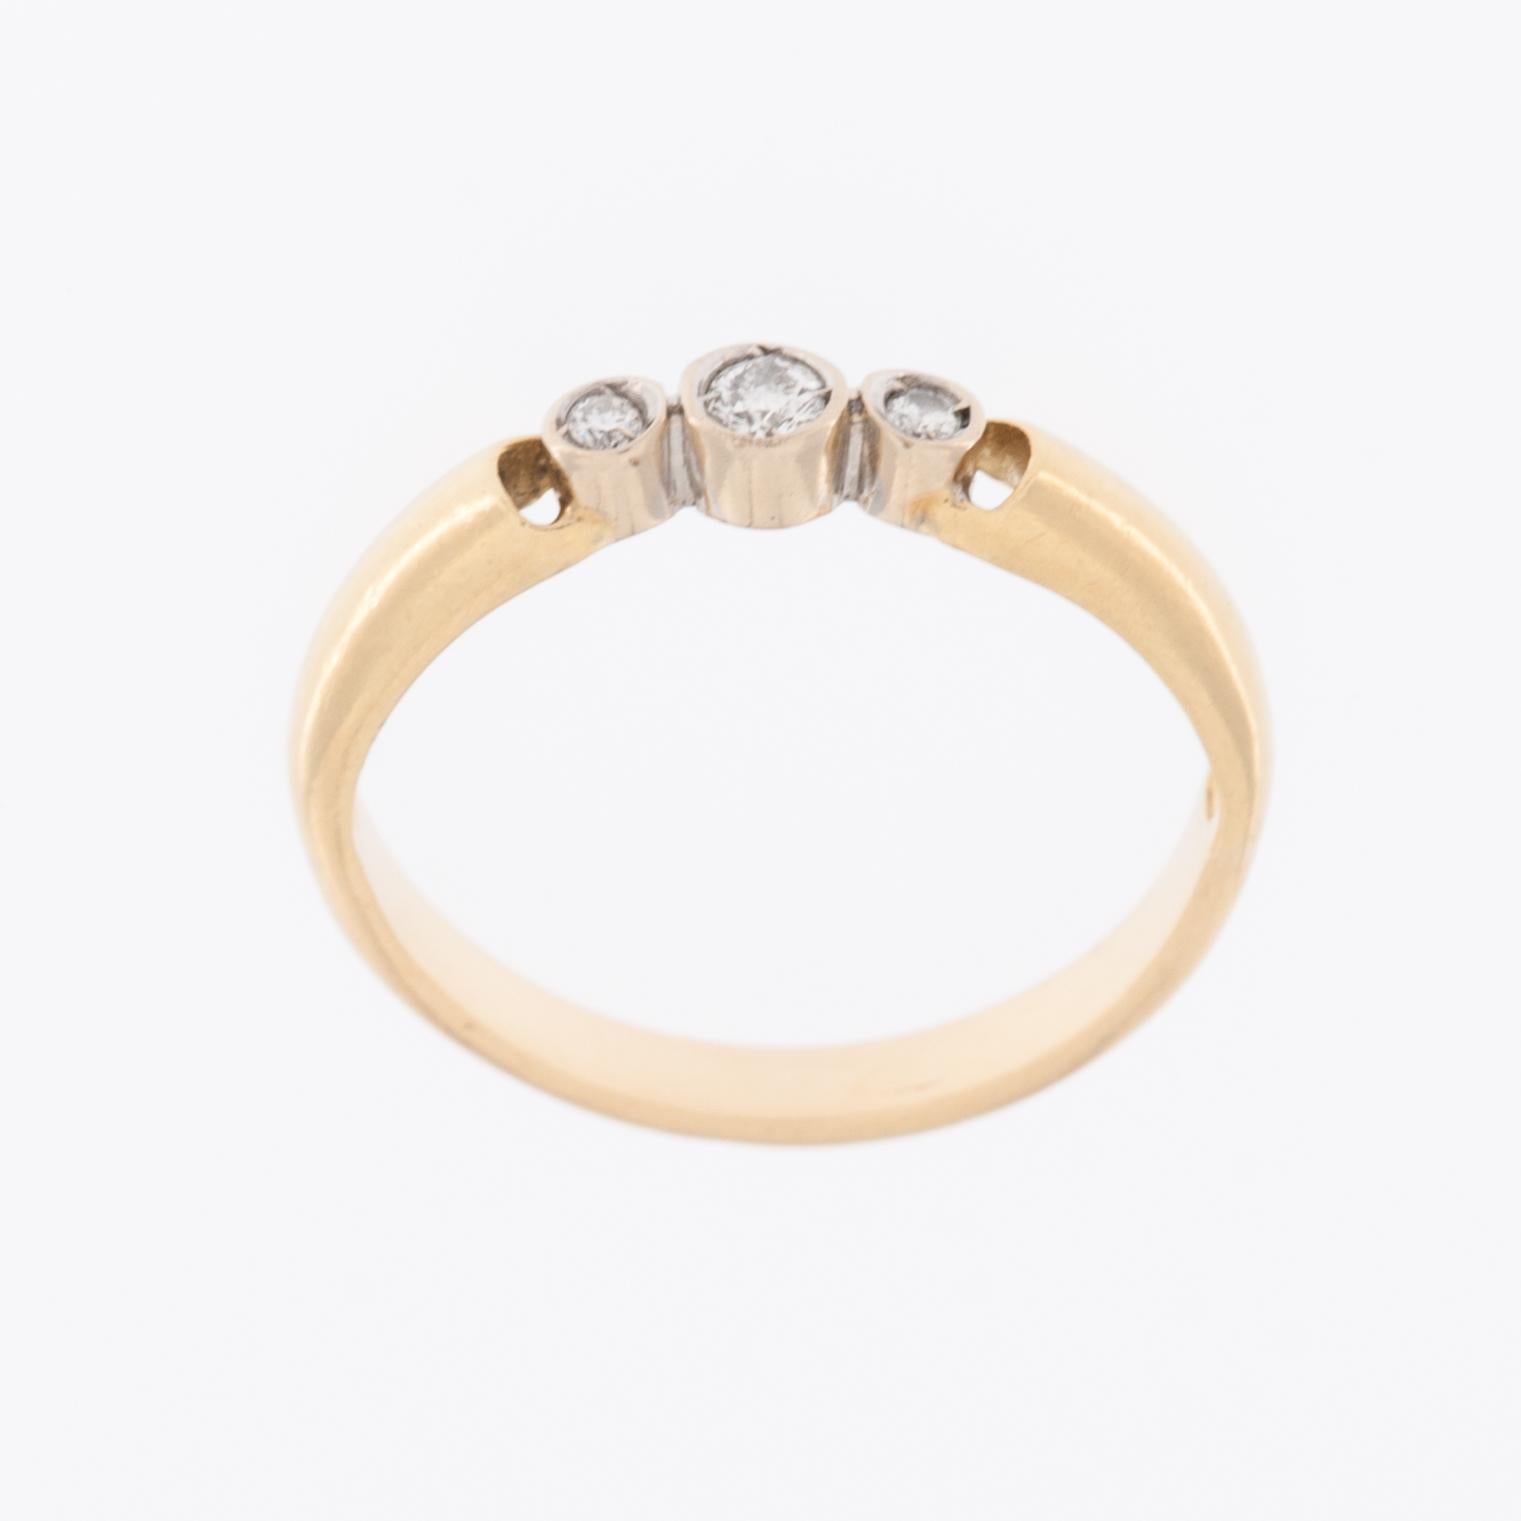 Der Vintage Trilogy Ring aus 18-karätigem Gold ist ein exquisites Schmuckstück, das zeitloses Design und luxuriöse Materialien nahtlos miteinander verbindet. Der aus hochwertigem 18-karätigem Gold gefertigte Ring besticht durch die Kombination von